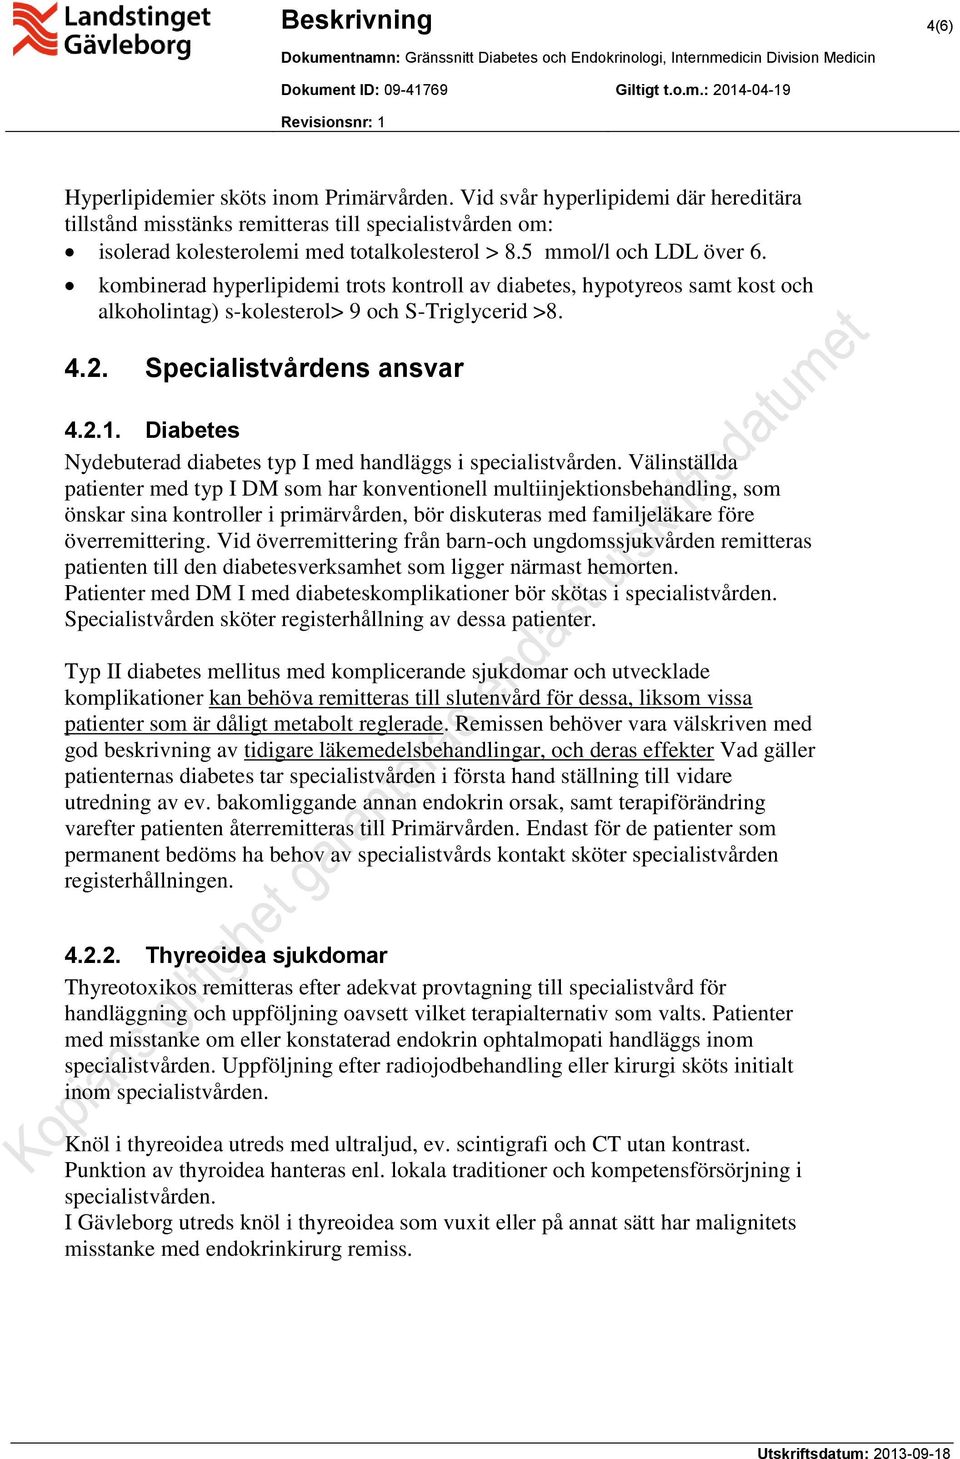 Diabetes Nydebuterad diabetes typ I med handläggs i specialistvården.